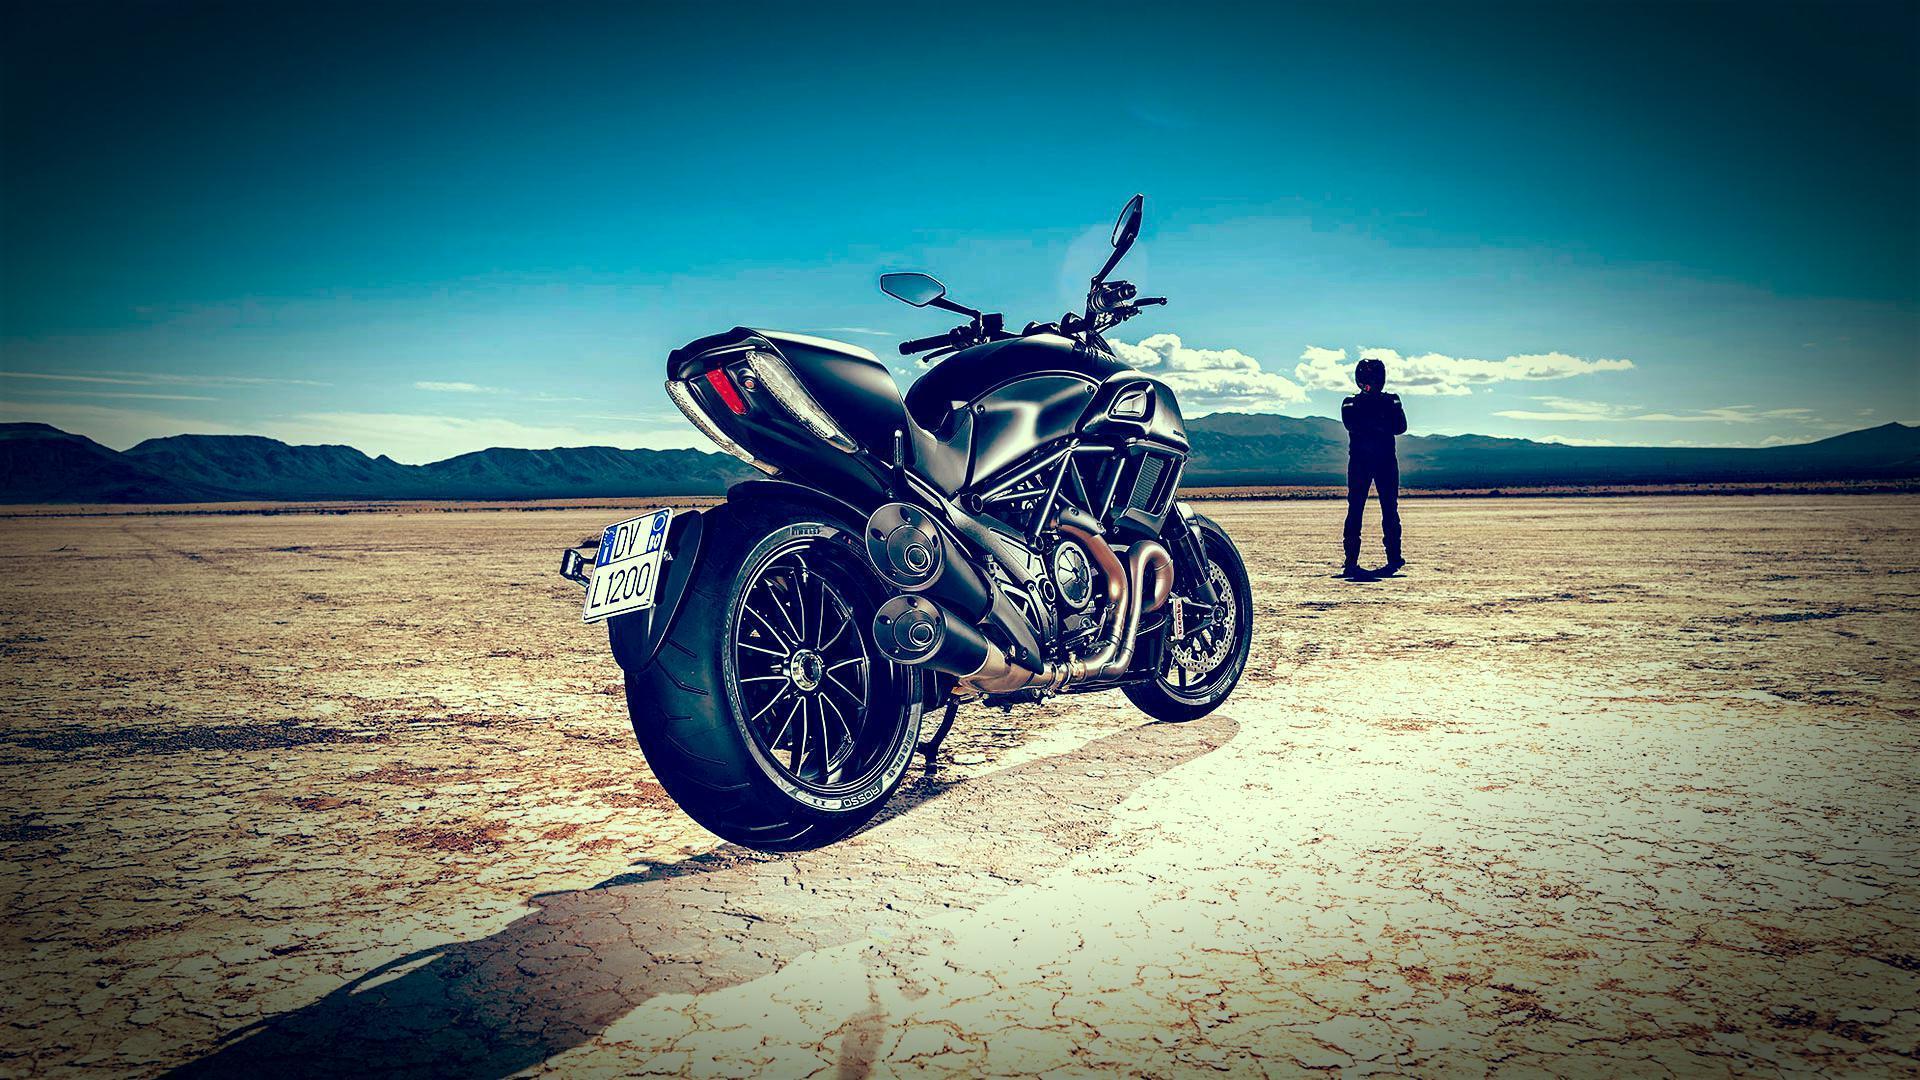 Ducati Diavel Wallpaper 2015. Big Bike MotorCycles